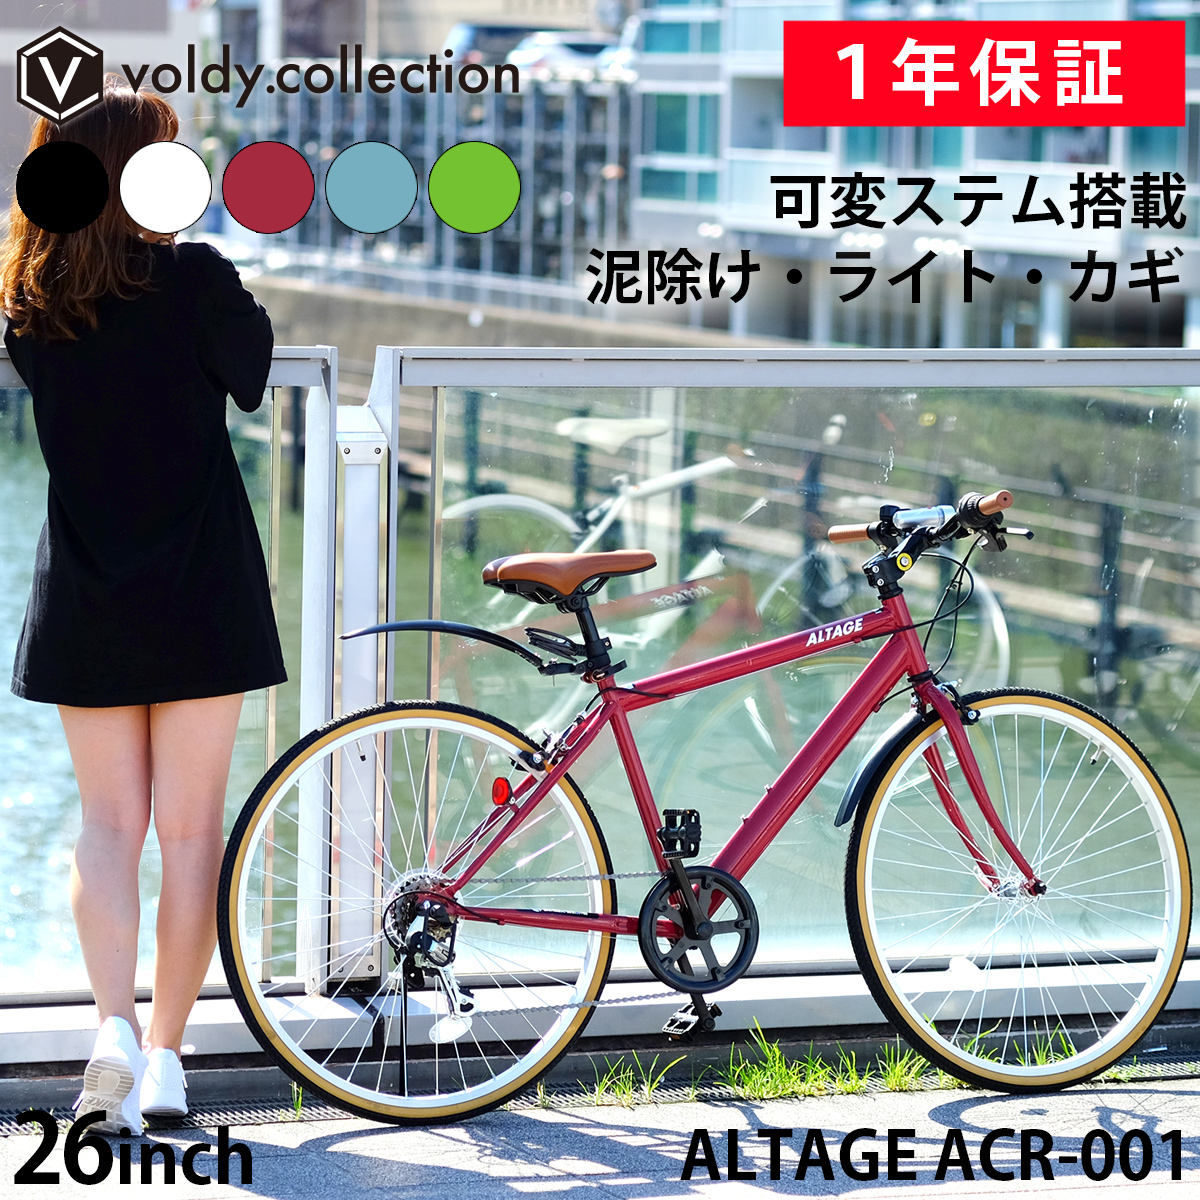 クロスバイク 自転車 26インチ 泥除け LEDライト カギ 可変ステム装備 シマノ6段変速 軽量 アルテージ ALTAGE ACR-001